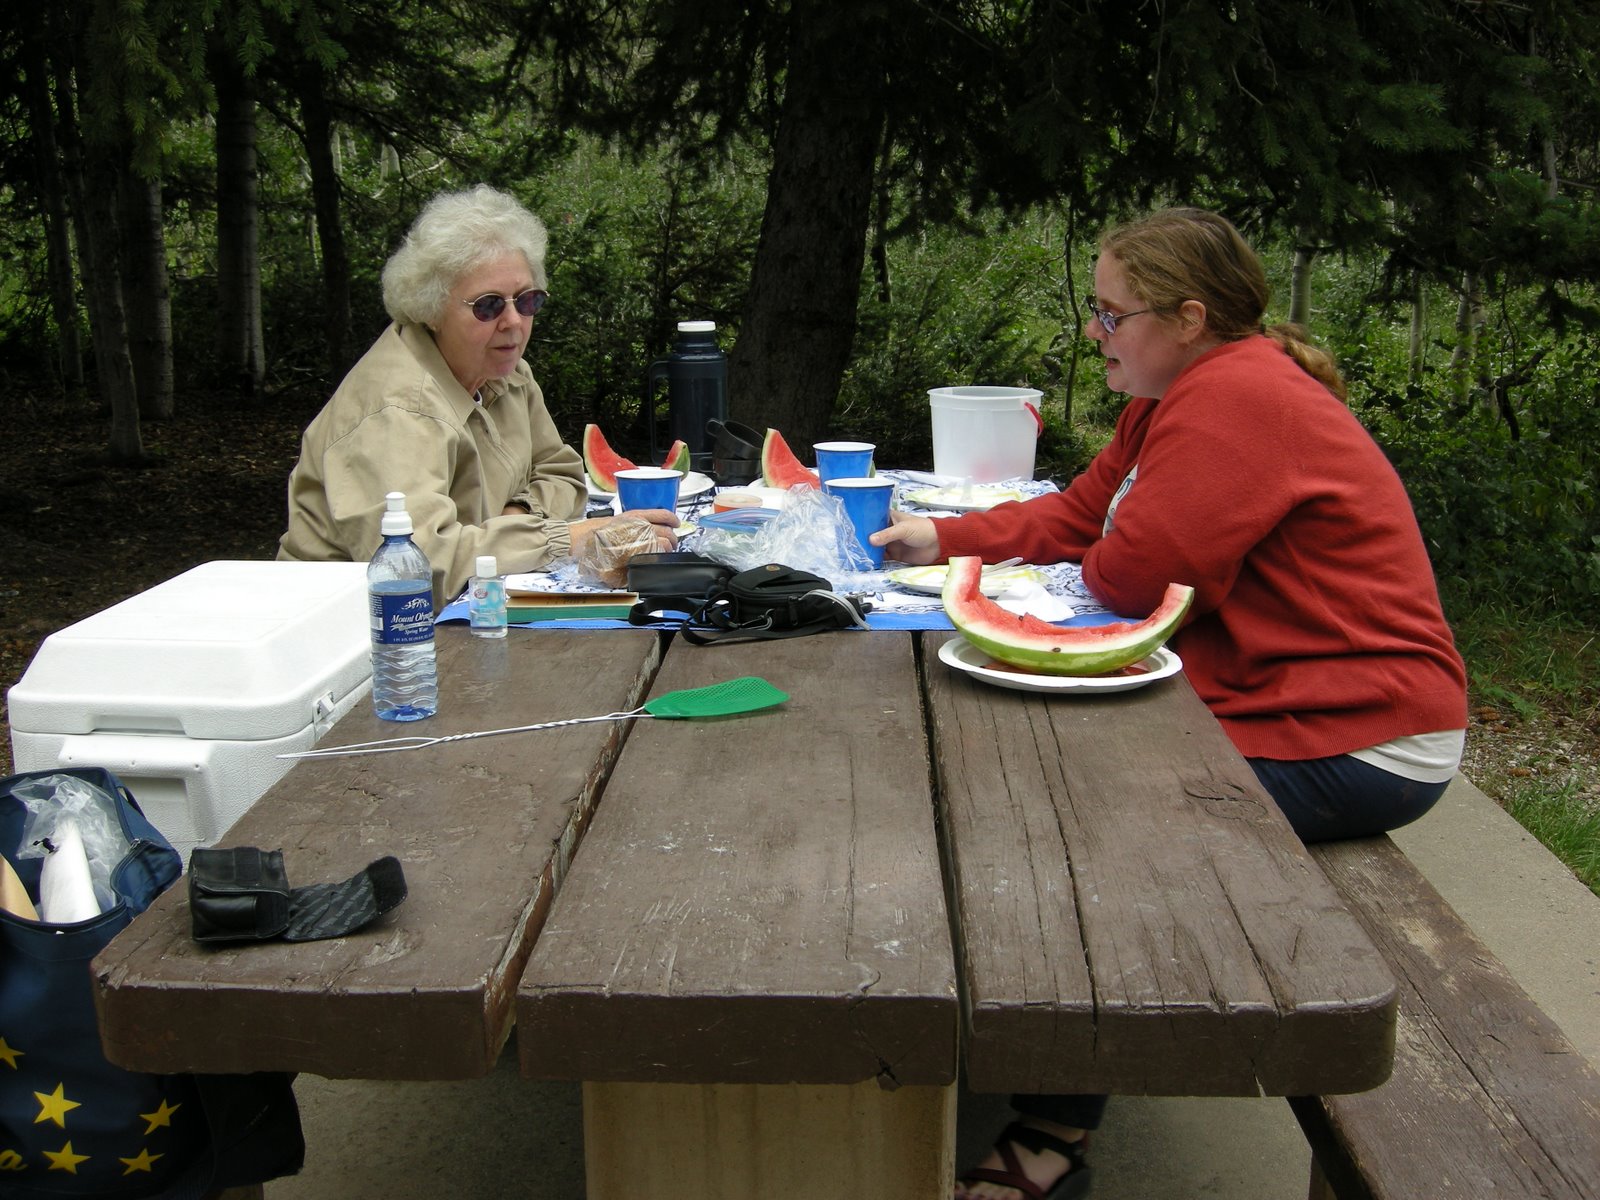 [Charlotte+and+Mom+at+picnic+table.jpg]